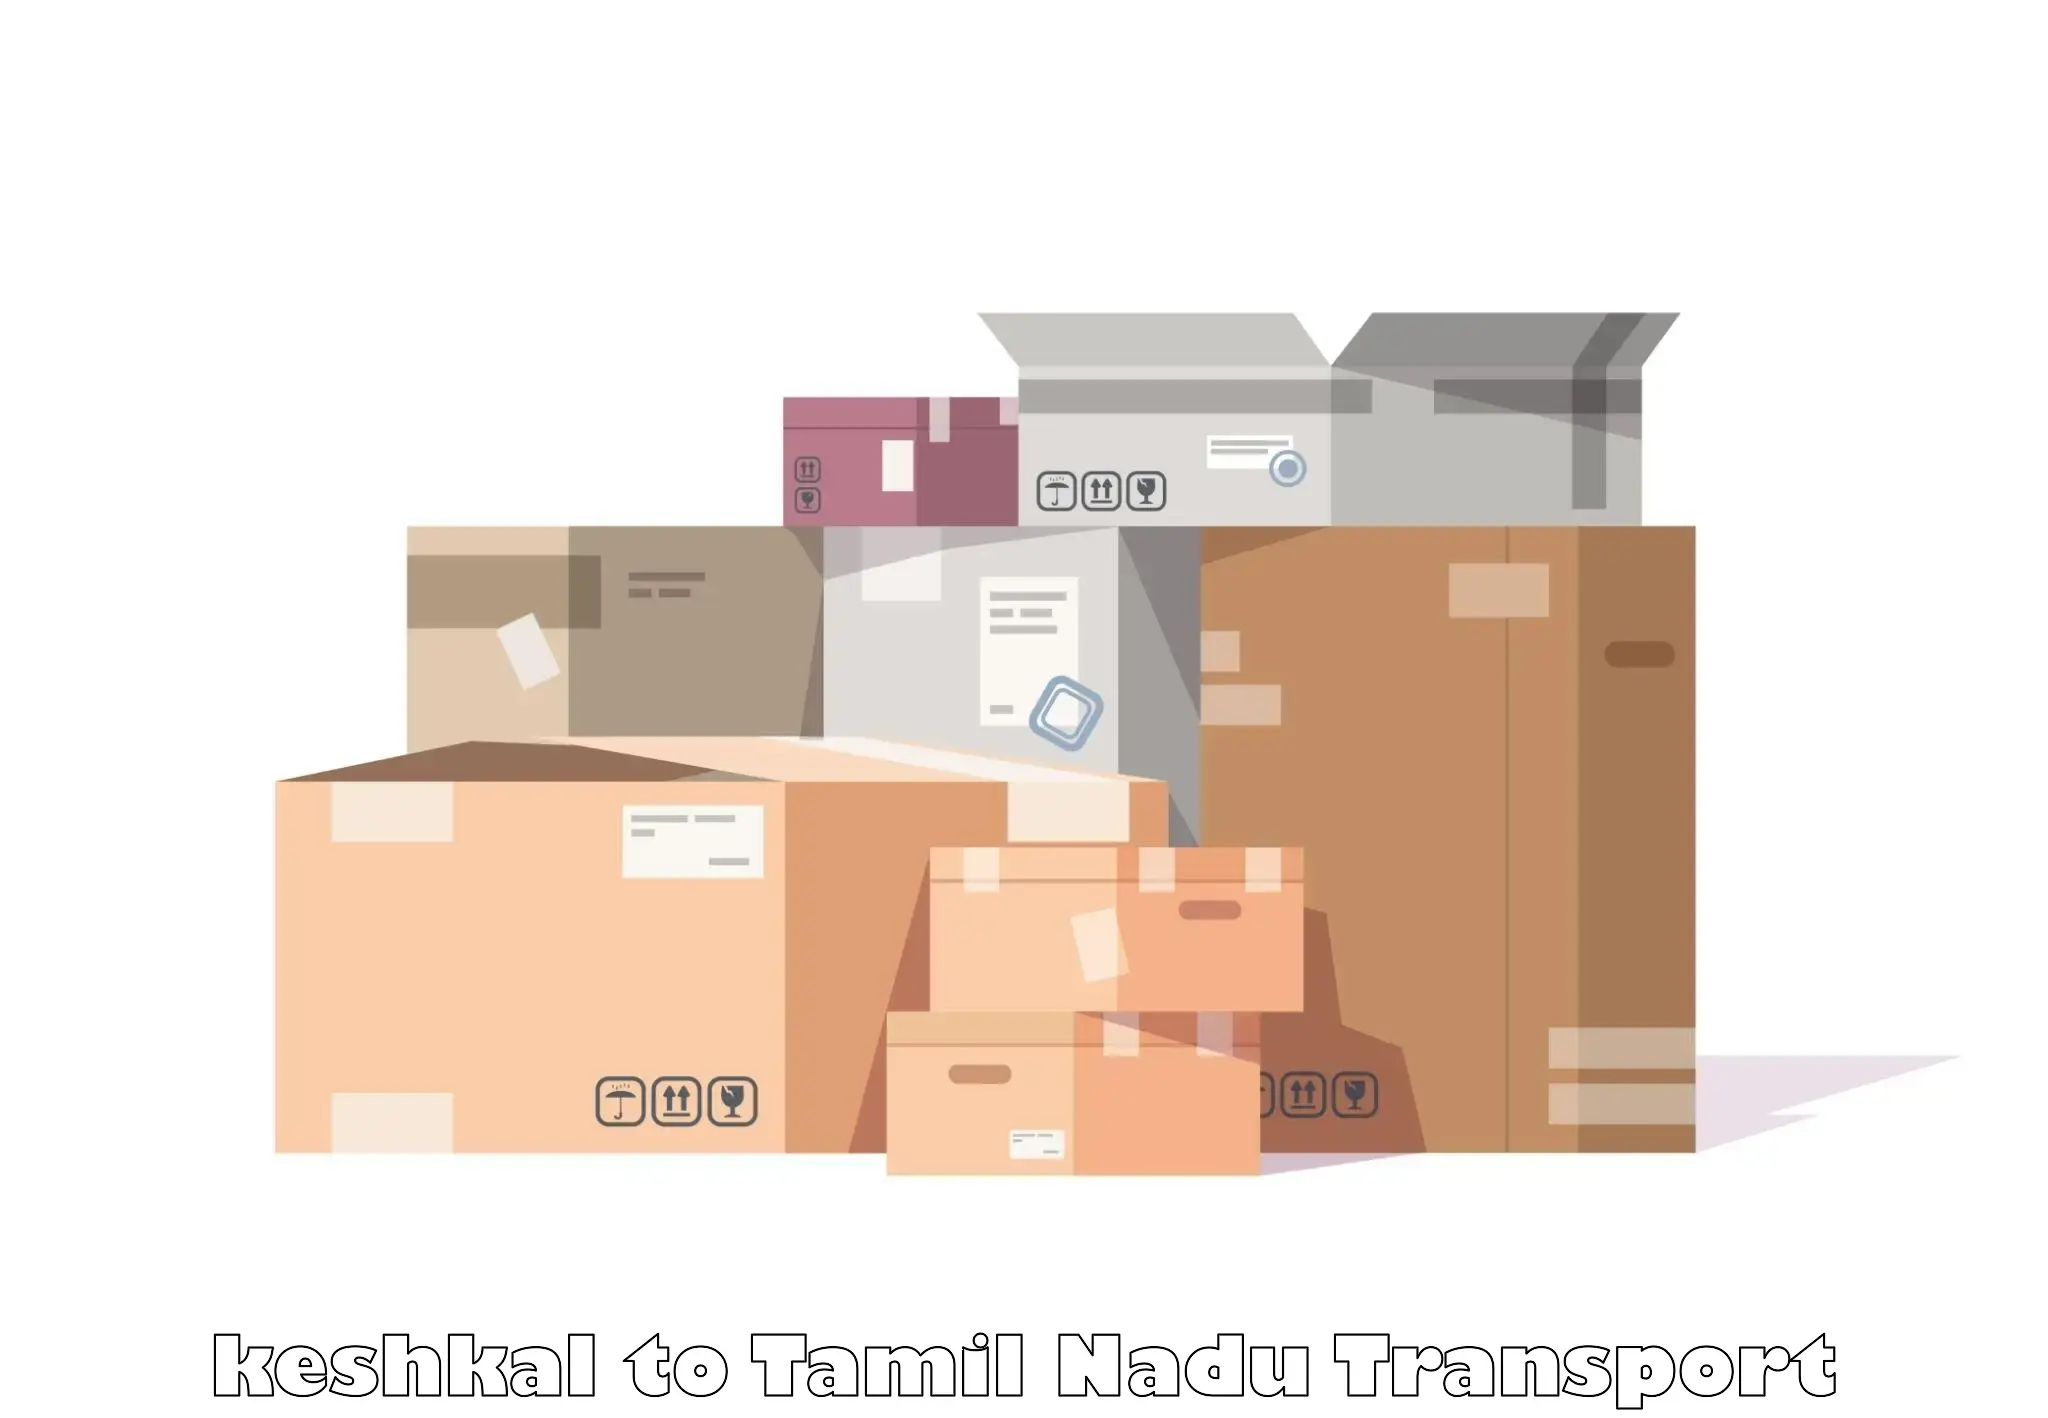 Lorry transport service keshkal to Arani